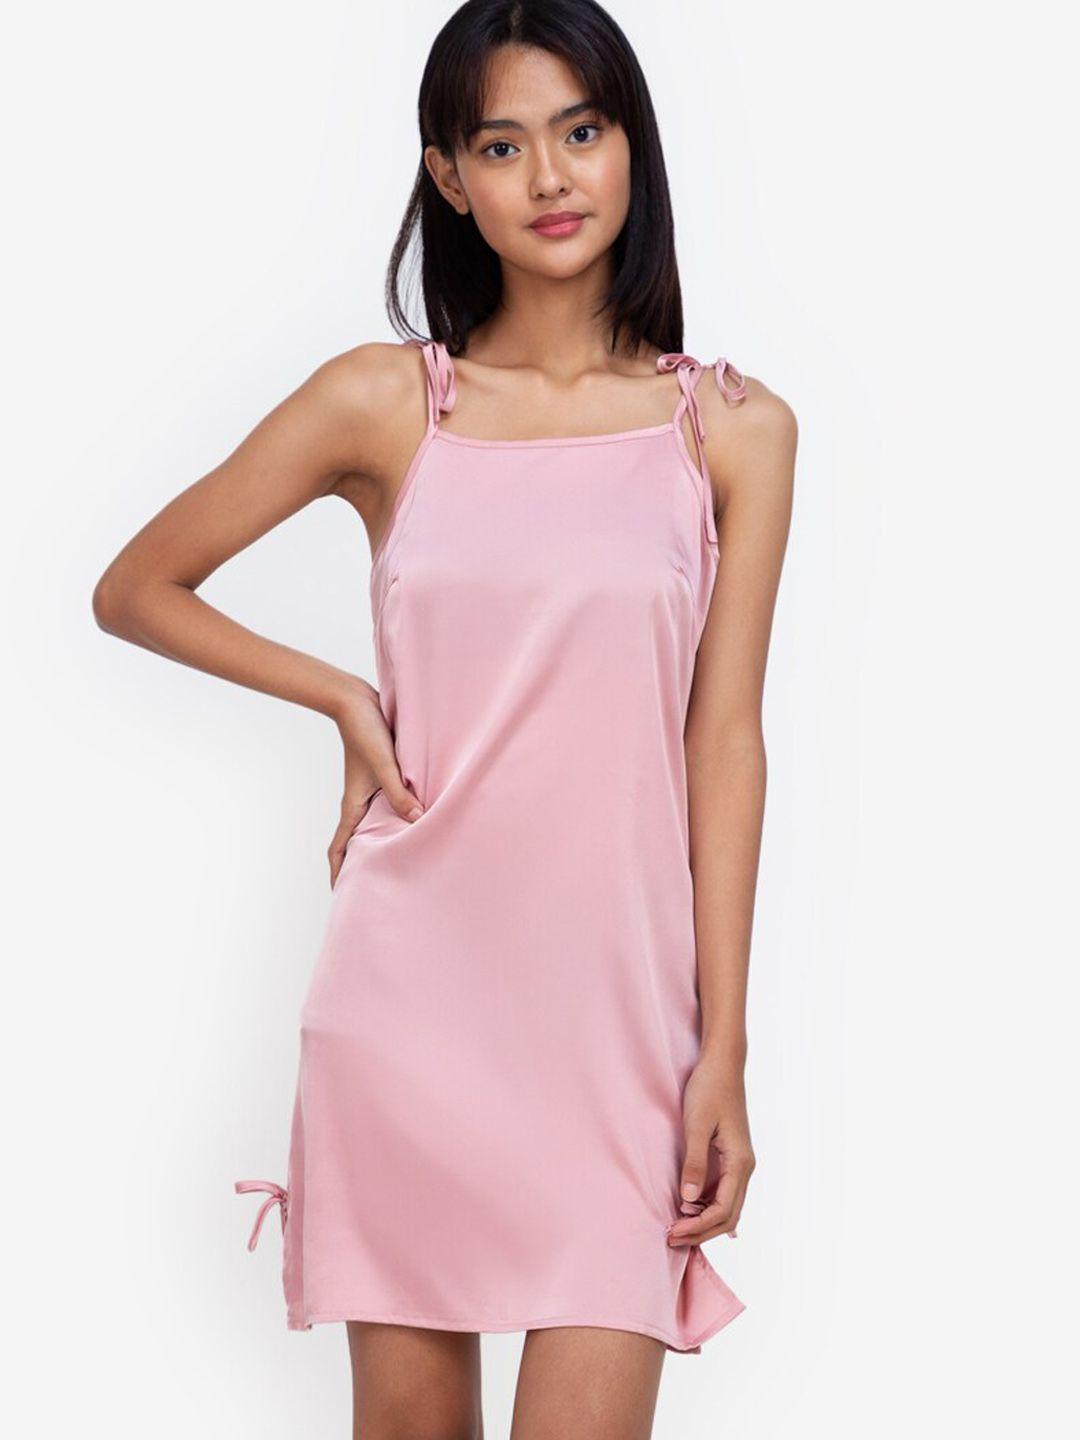 zalora basics pink solid pure cotton nightdress